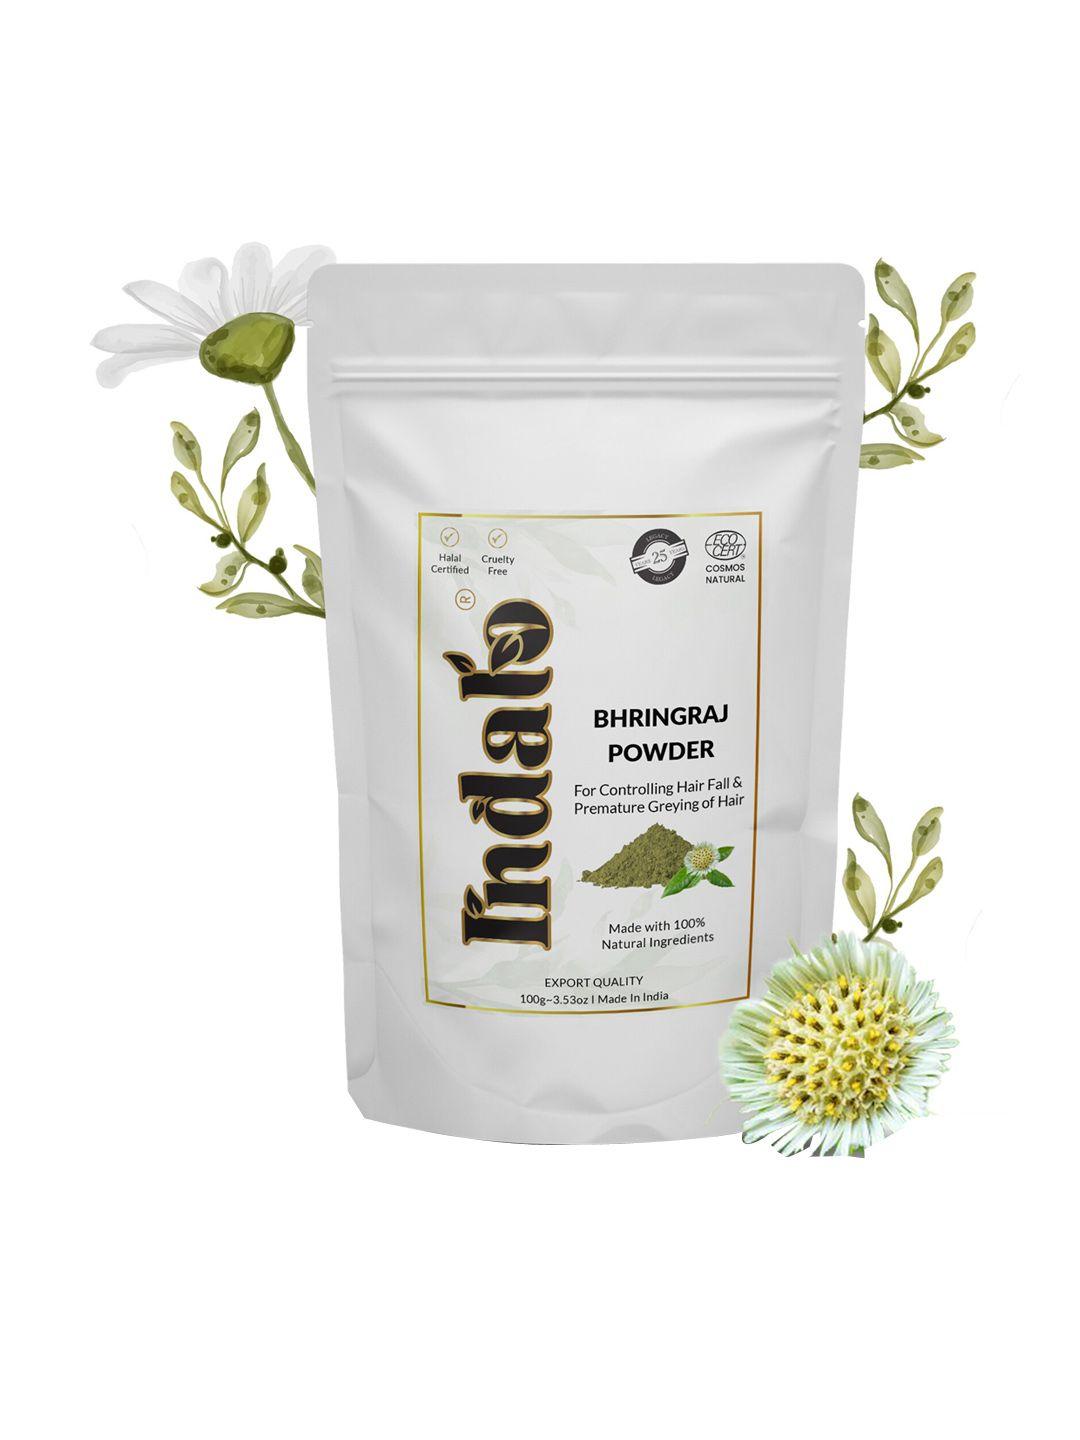 indalo natural bhringraj powder for hair growth & hair fall treatment - 100 g